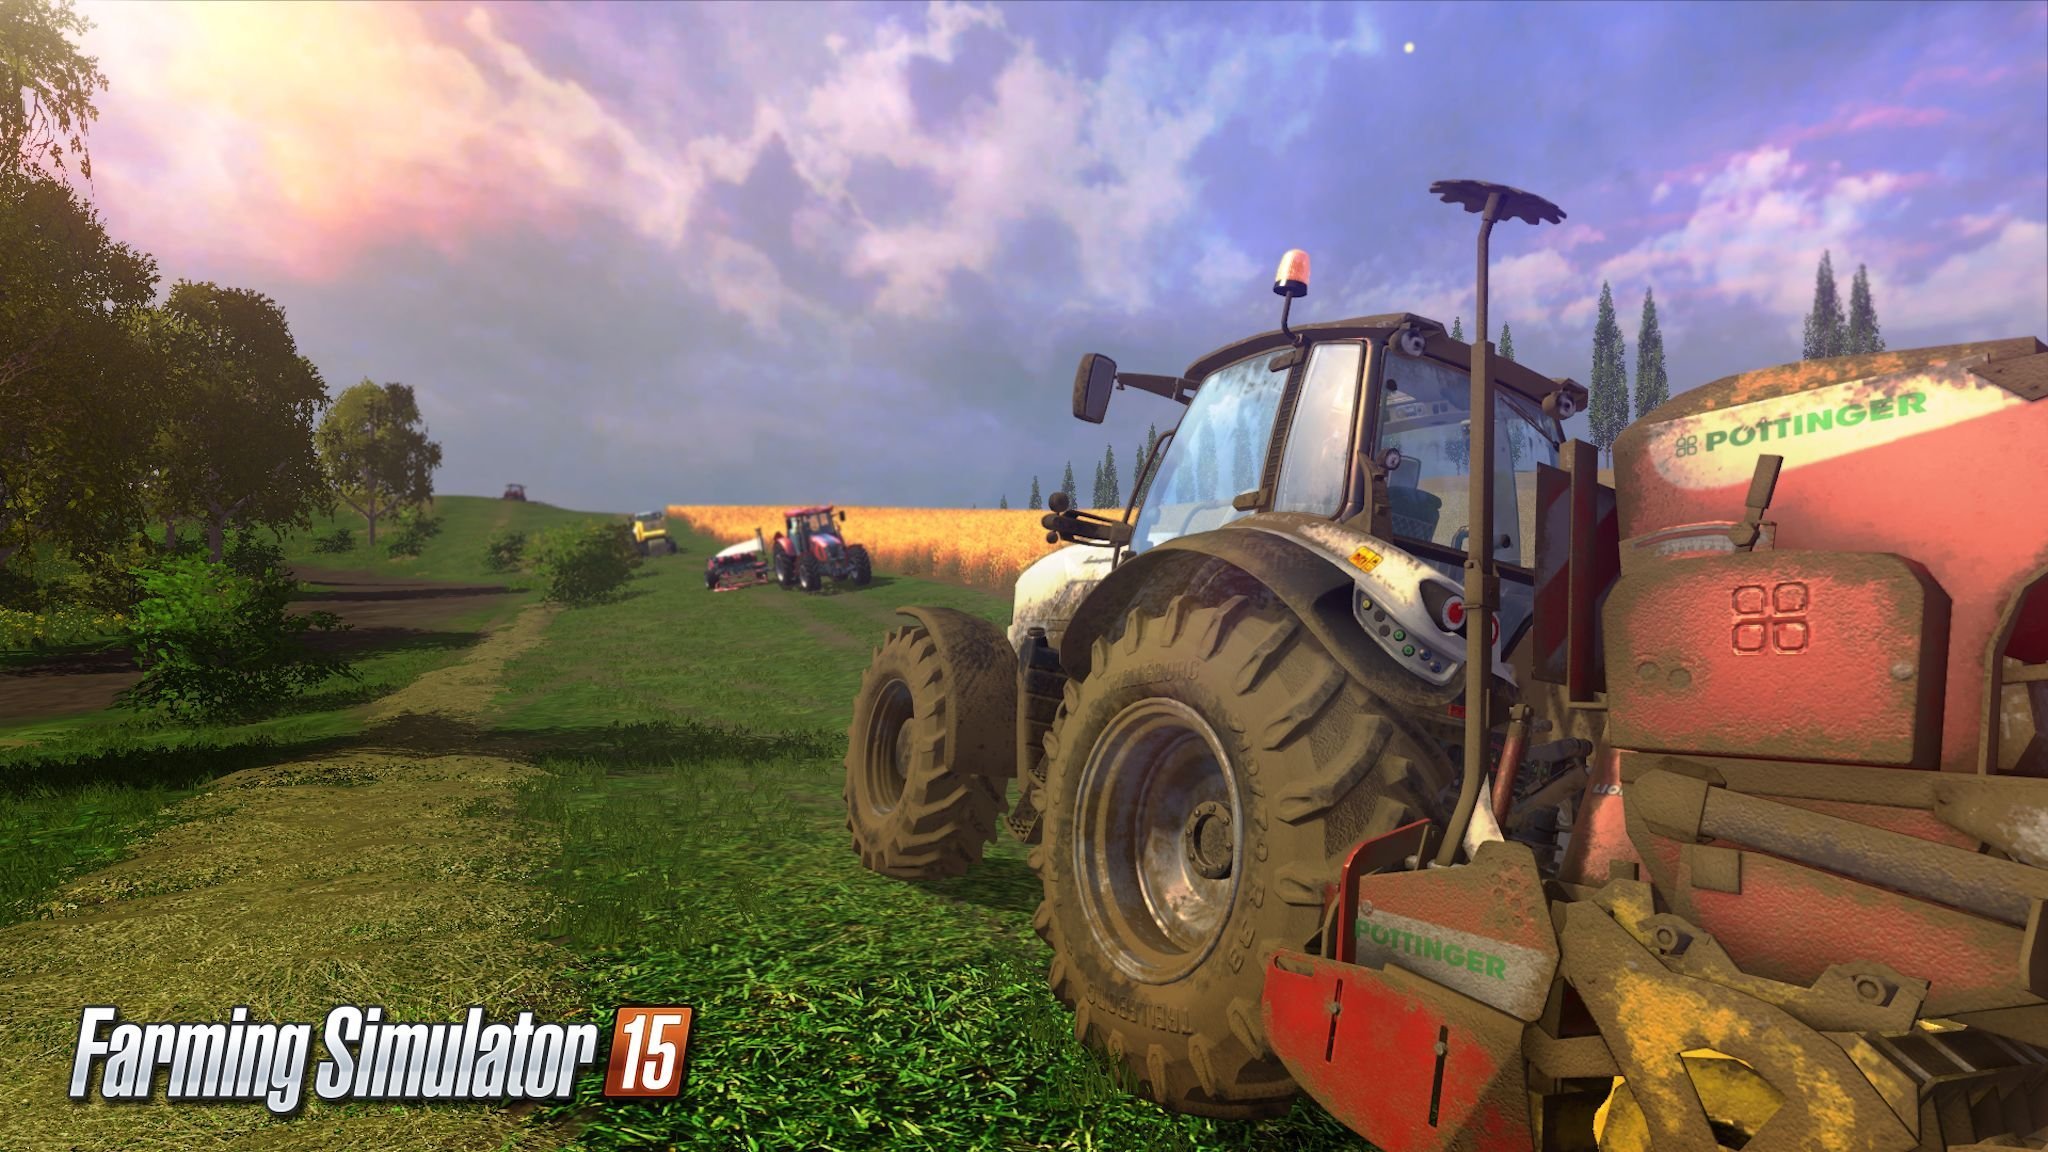 Farming-Simulator-15-preview-main.jpg